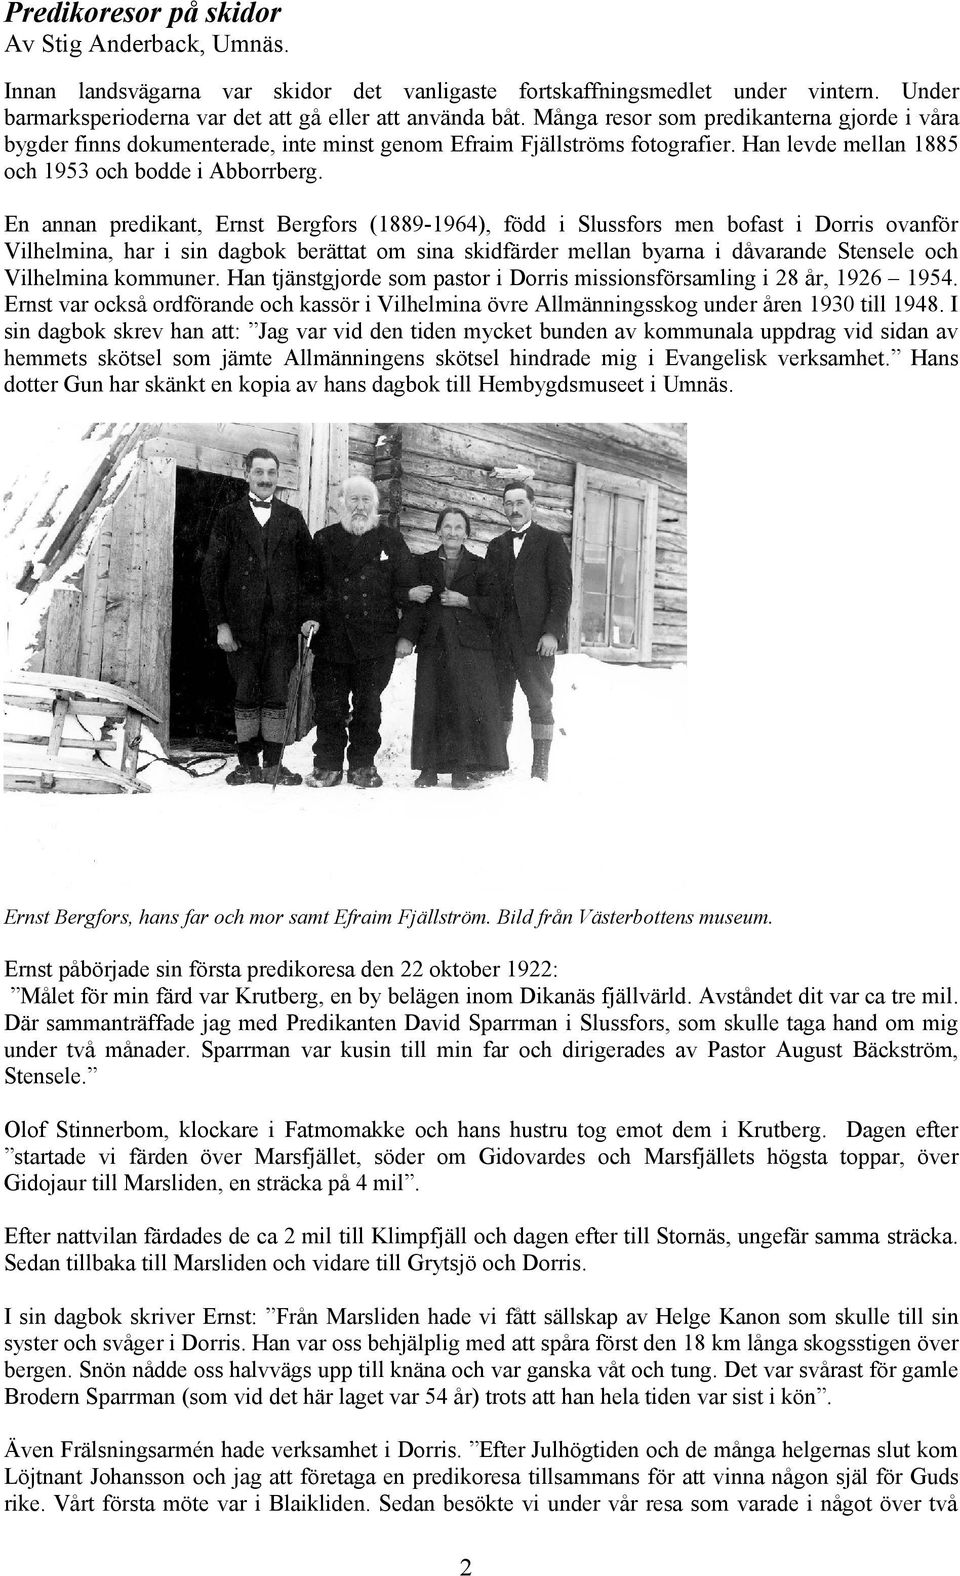 En annan predikant, Ernst Bergfors (1889-1964), född i Slussfors men bofast i Dorris ovanför Vilhelmina, har i sin dagbok berättat om sina skidfärder mellan byarna i dåvarande Stensele och Vilhelmina